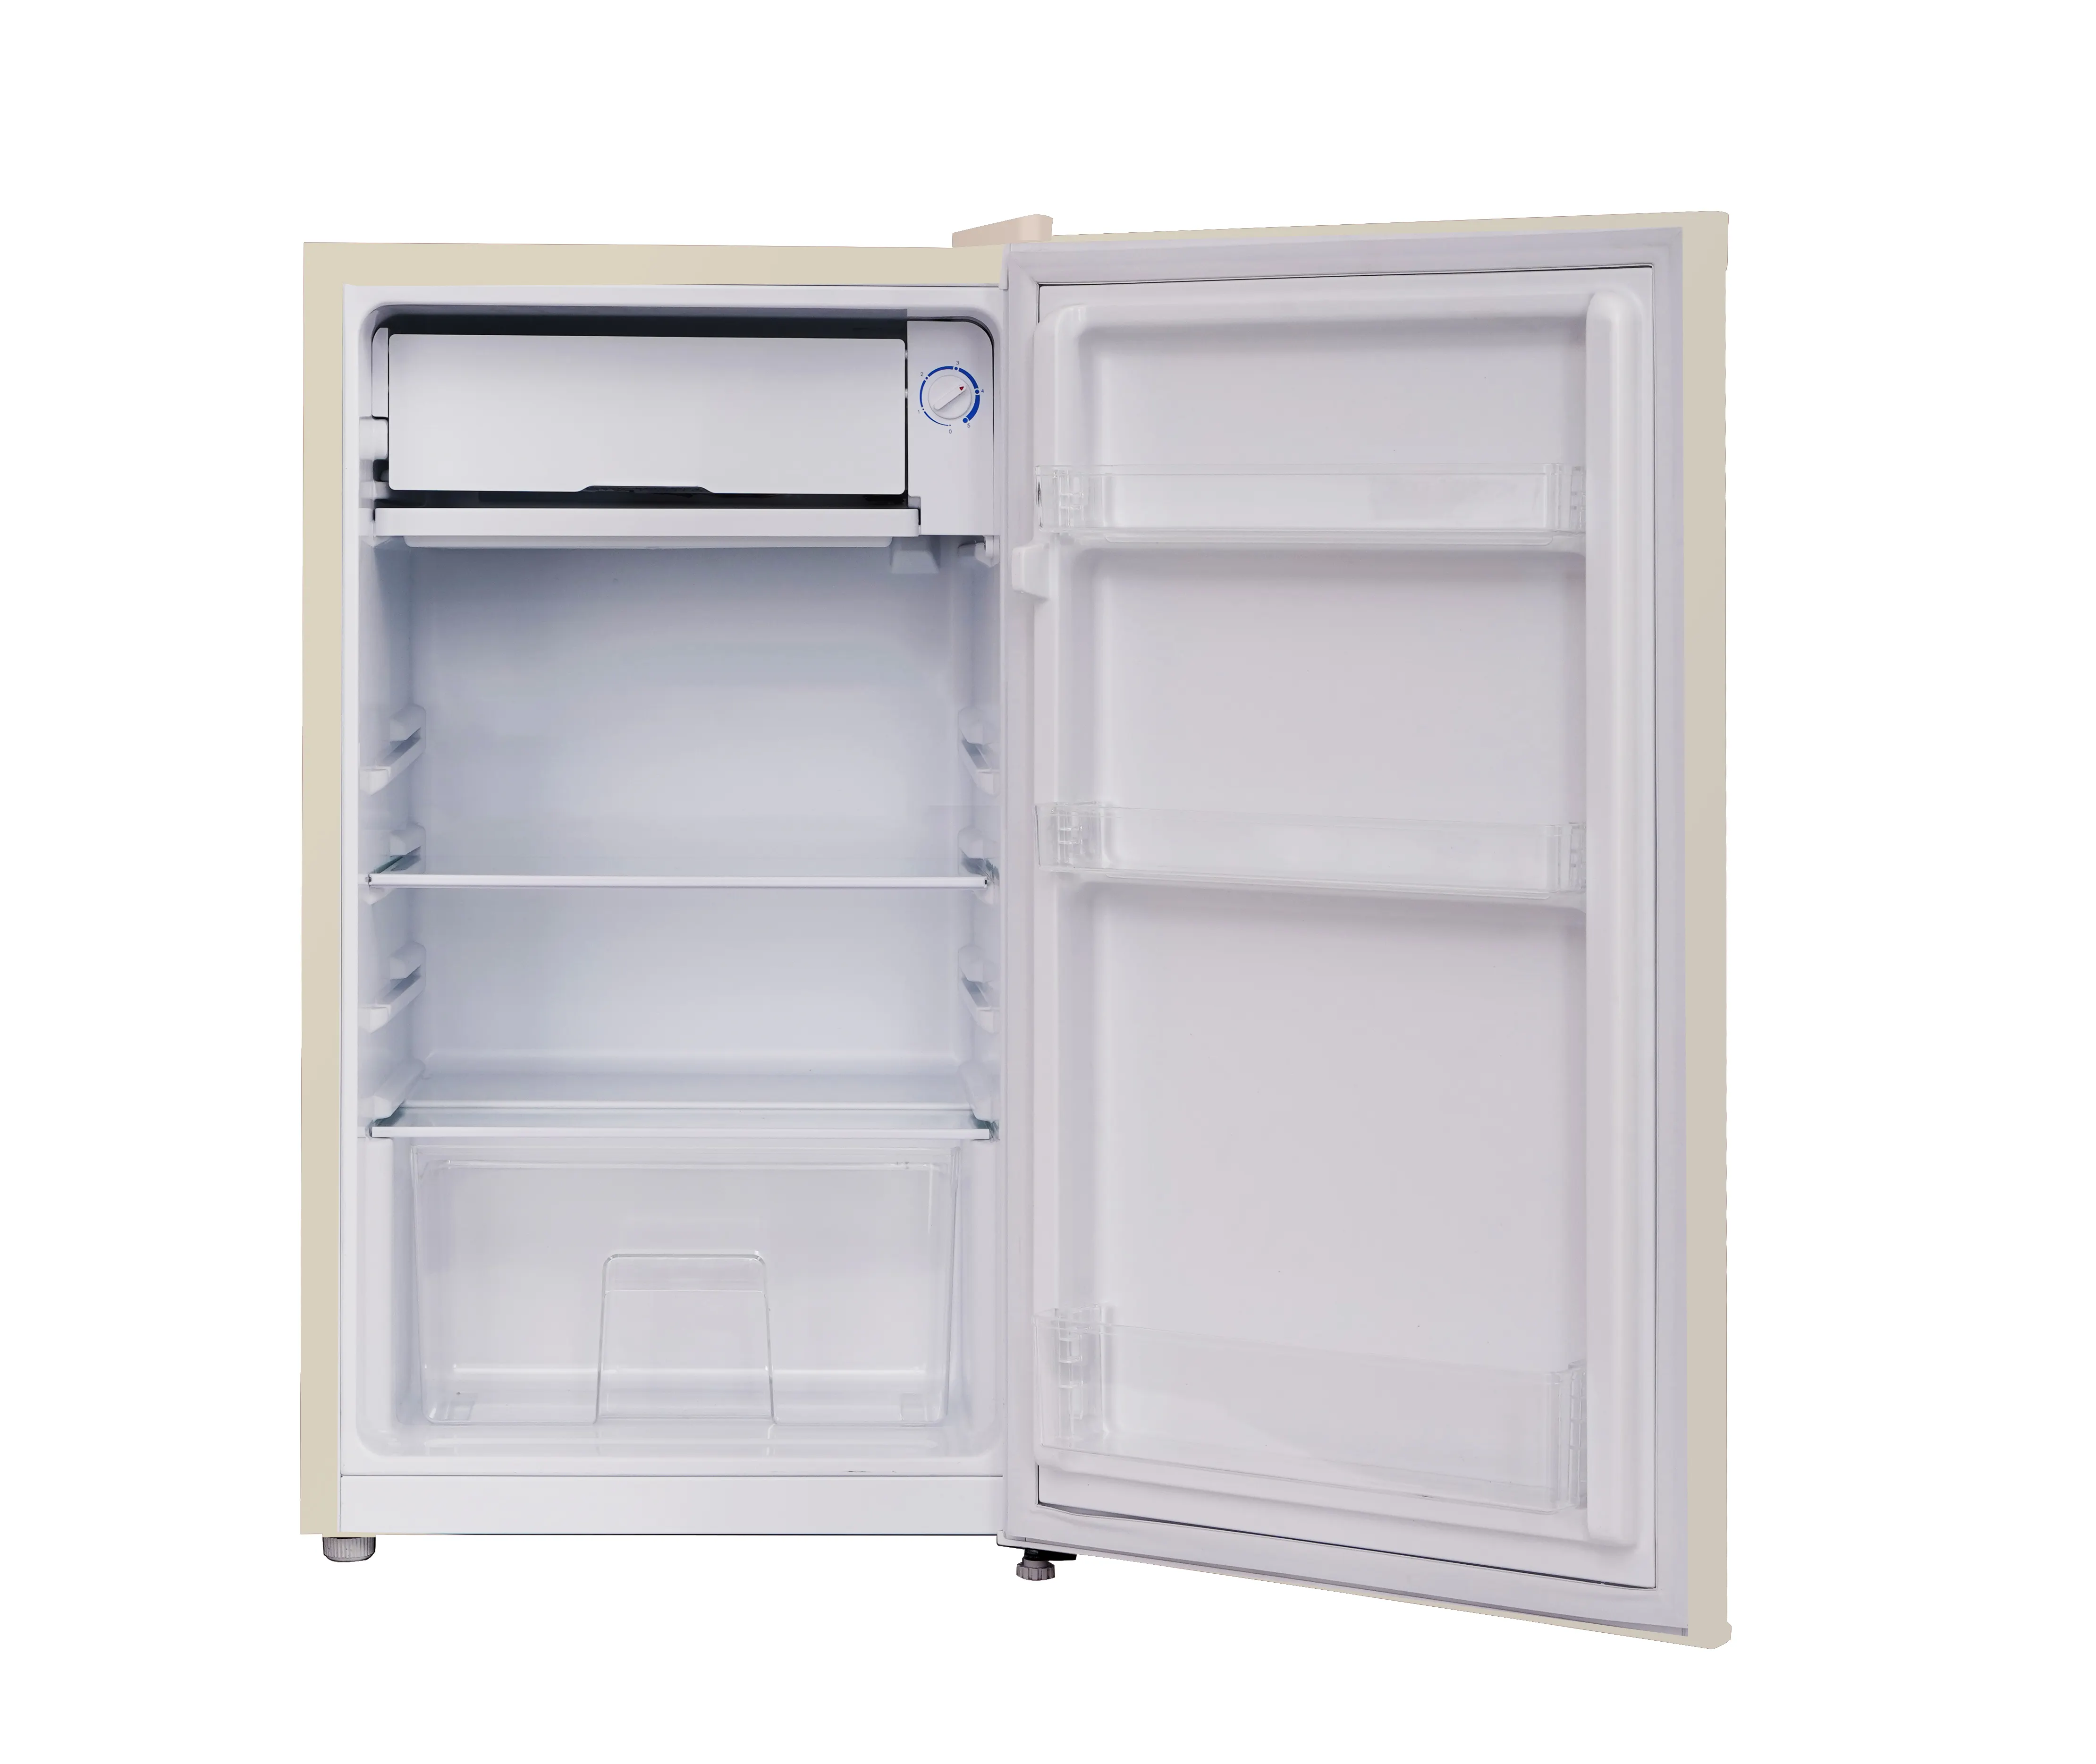 92L White Single Door Upright Retro Mini Small Fridge Refrigerator For Home